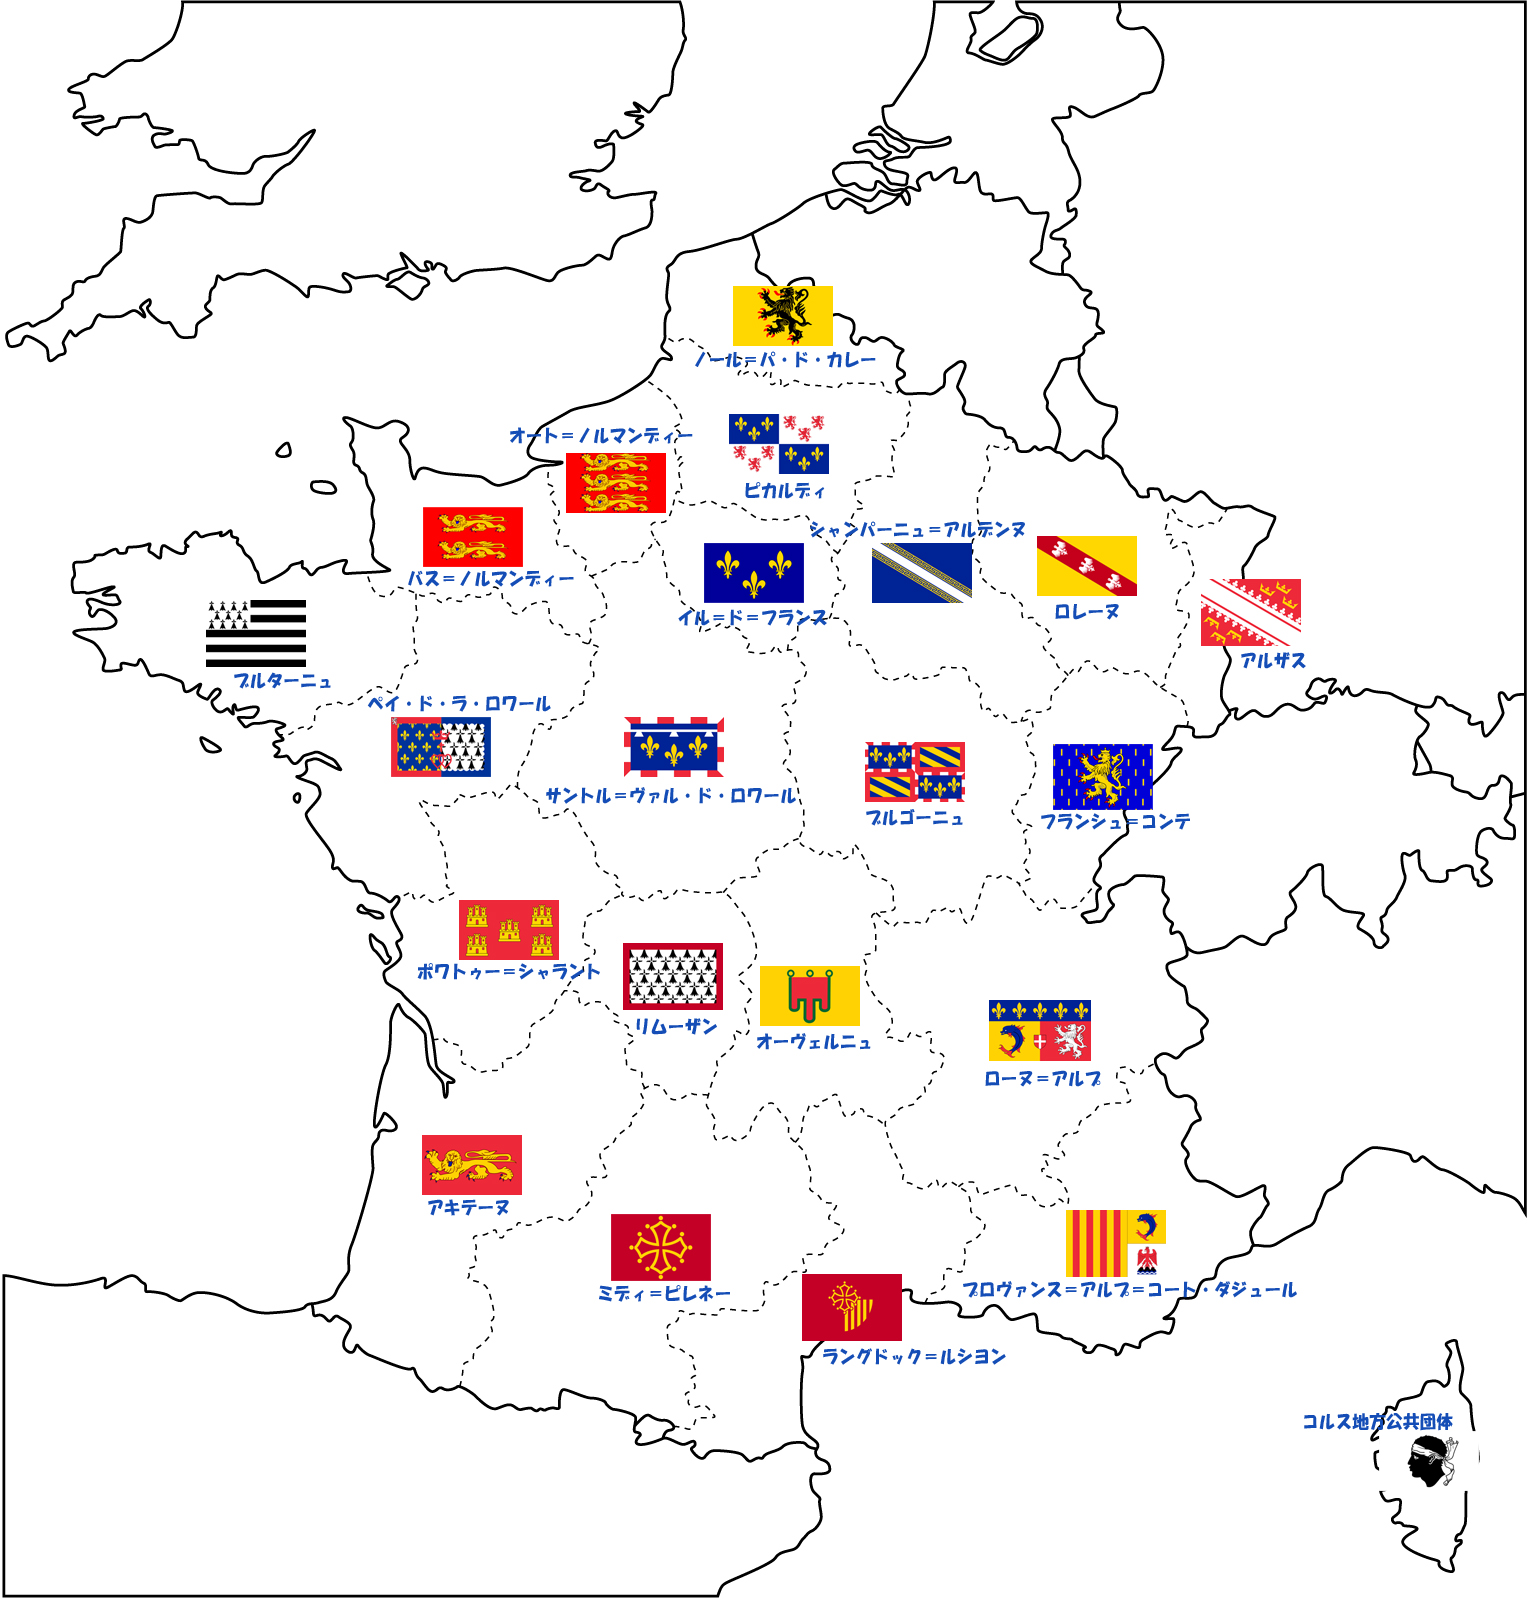 フランスの地域圏と紋章